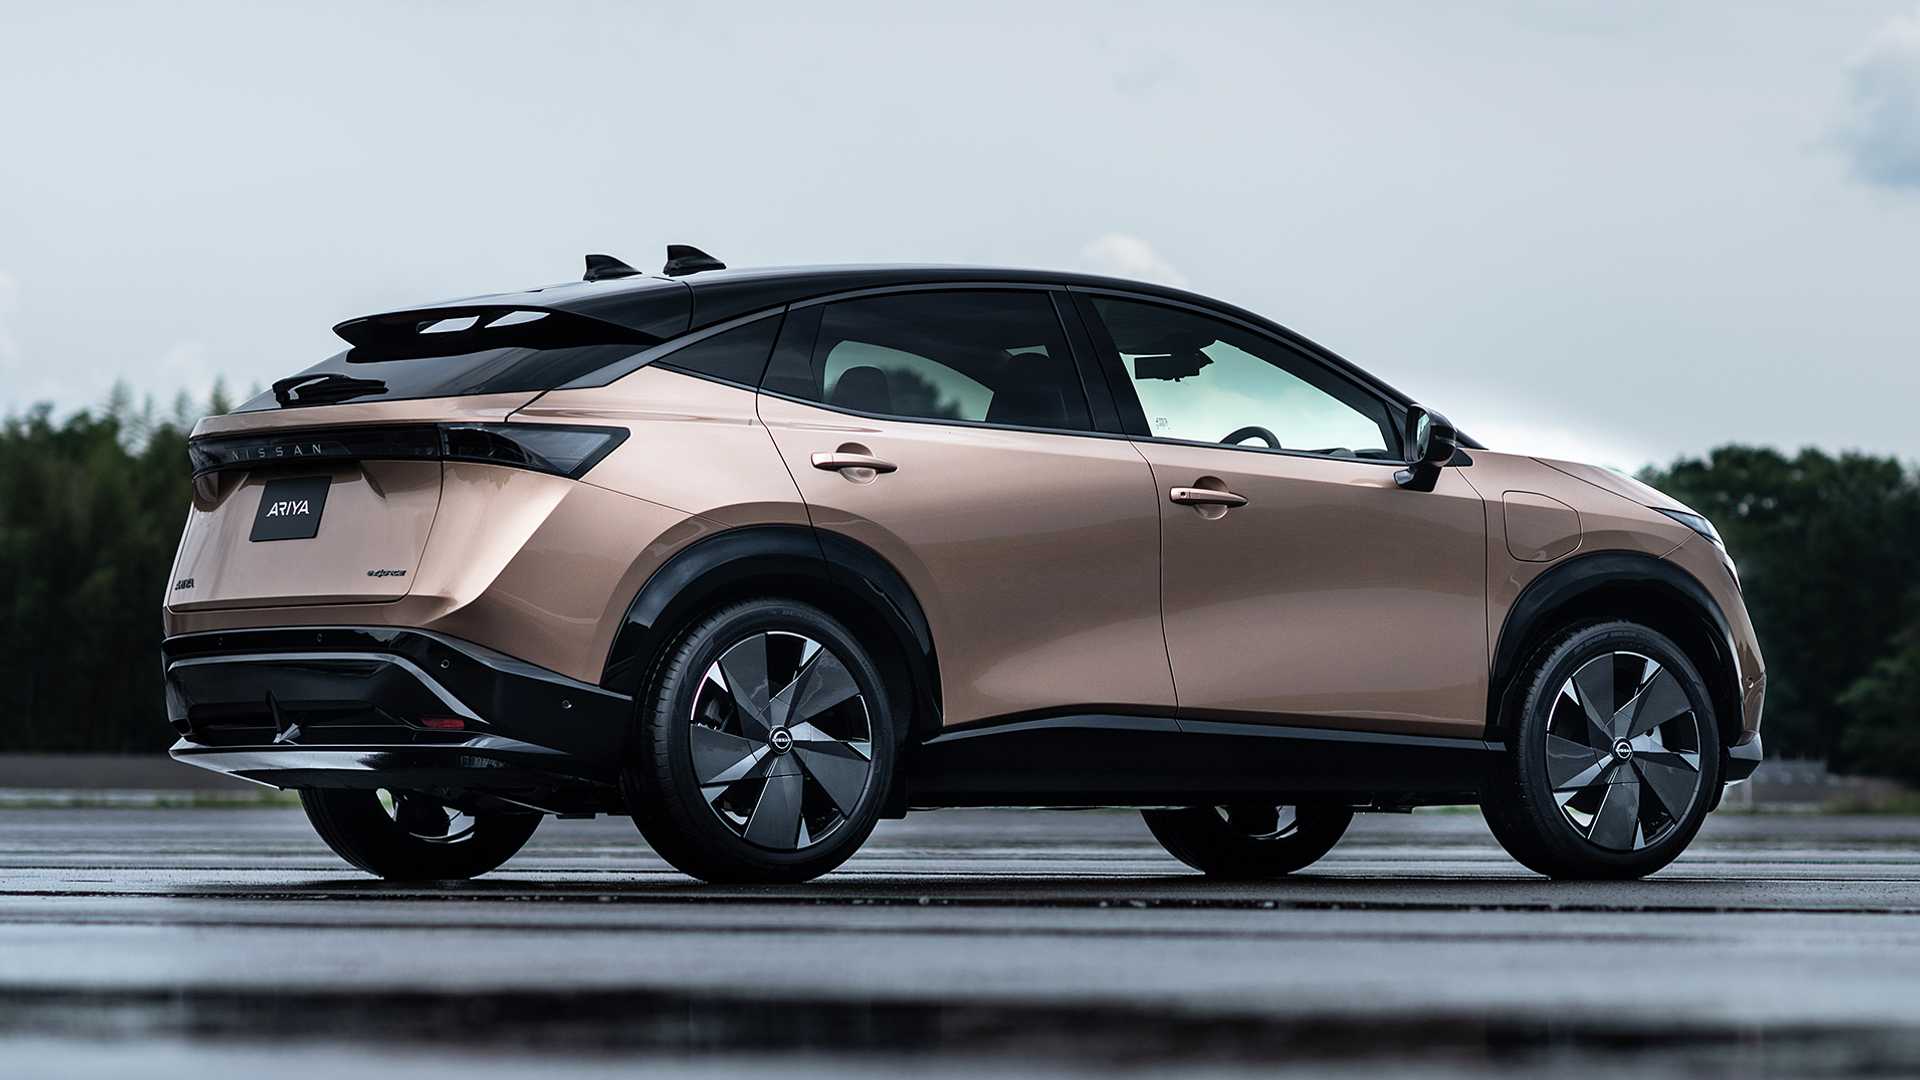 Nissan nhá hàng SUV mới: Có thể to ngang Hyundai Tucson, thiết kế hầm hố - Ảnh 3.